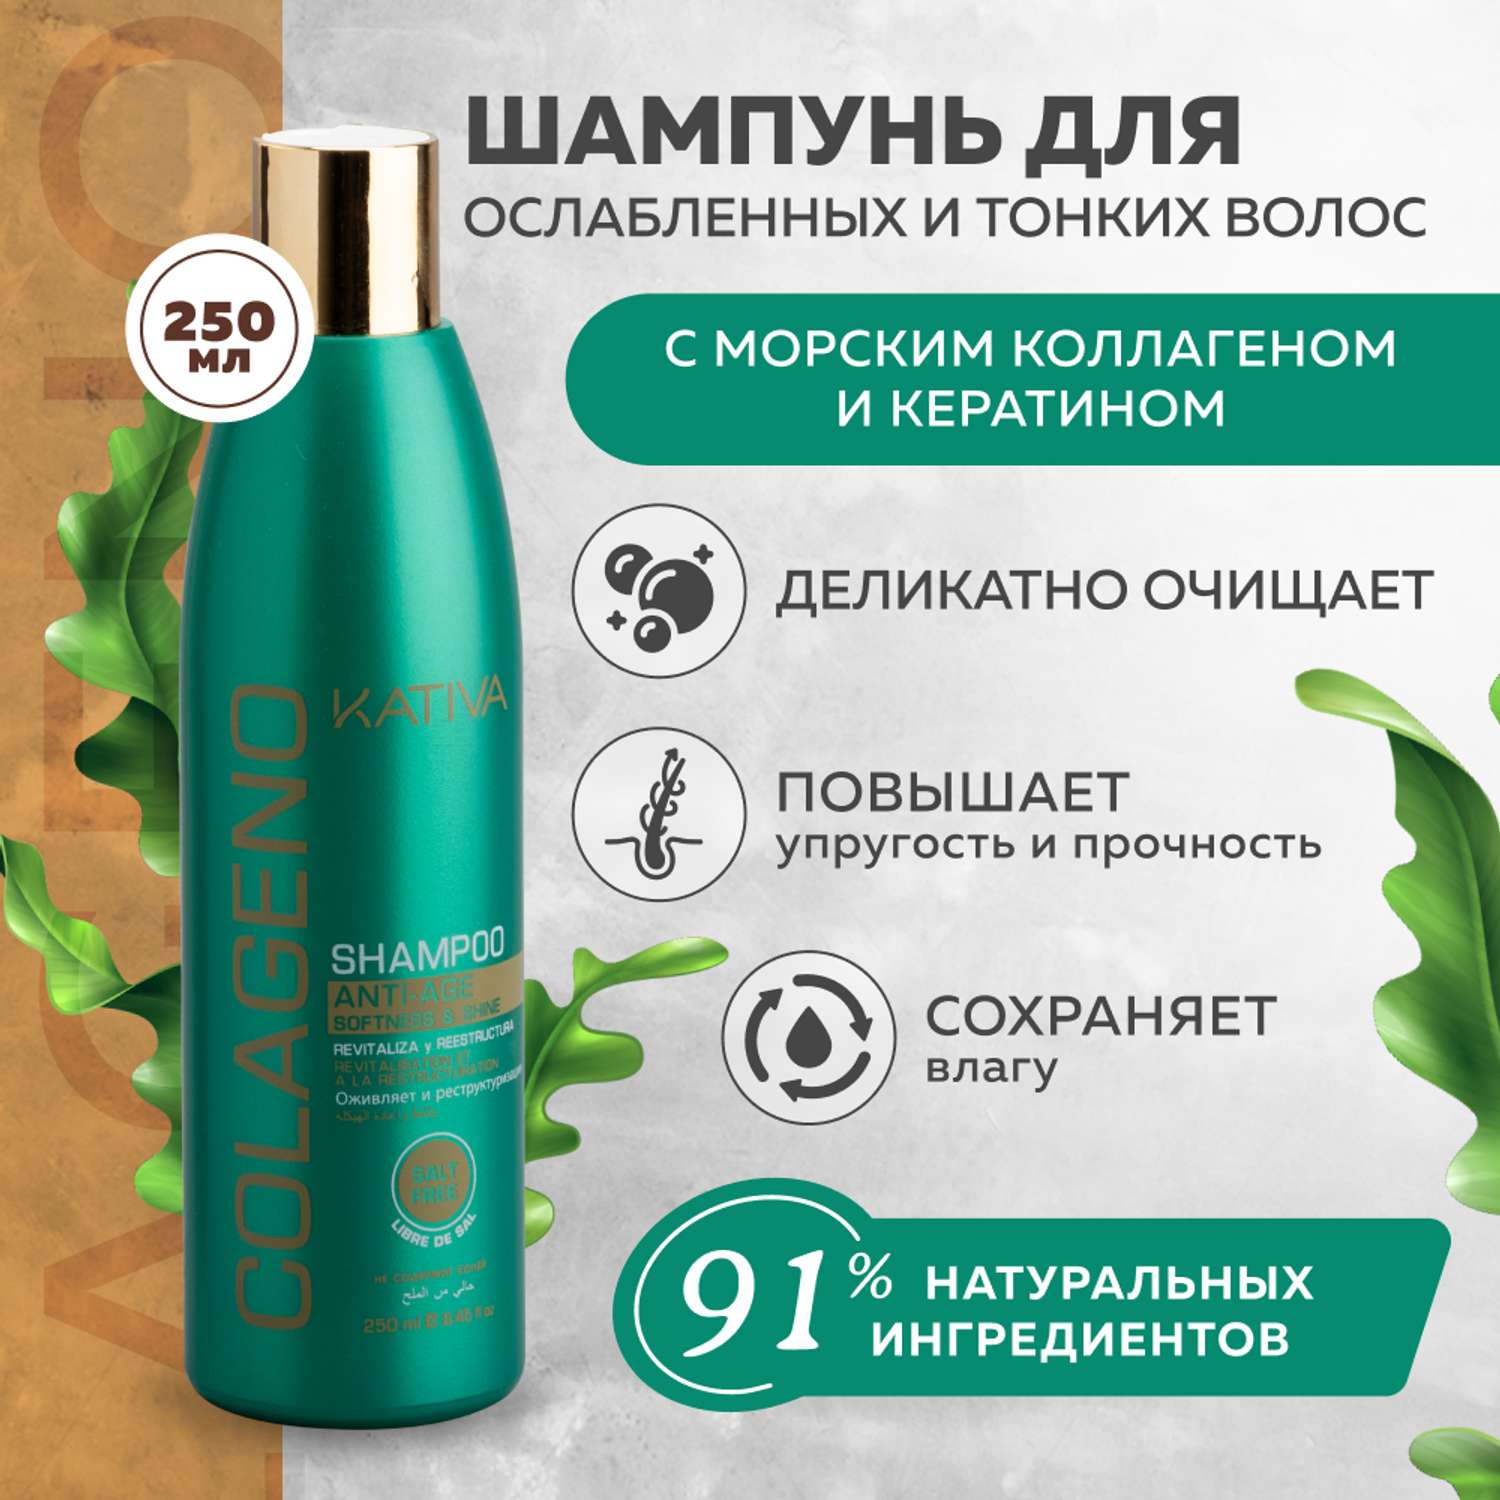 Коллагеновый шампунь Kativa для всех типов волос COLAGENO 250 мл - фото 2